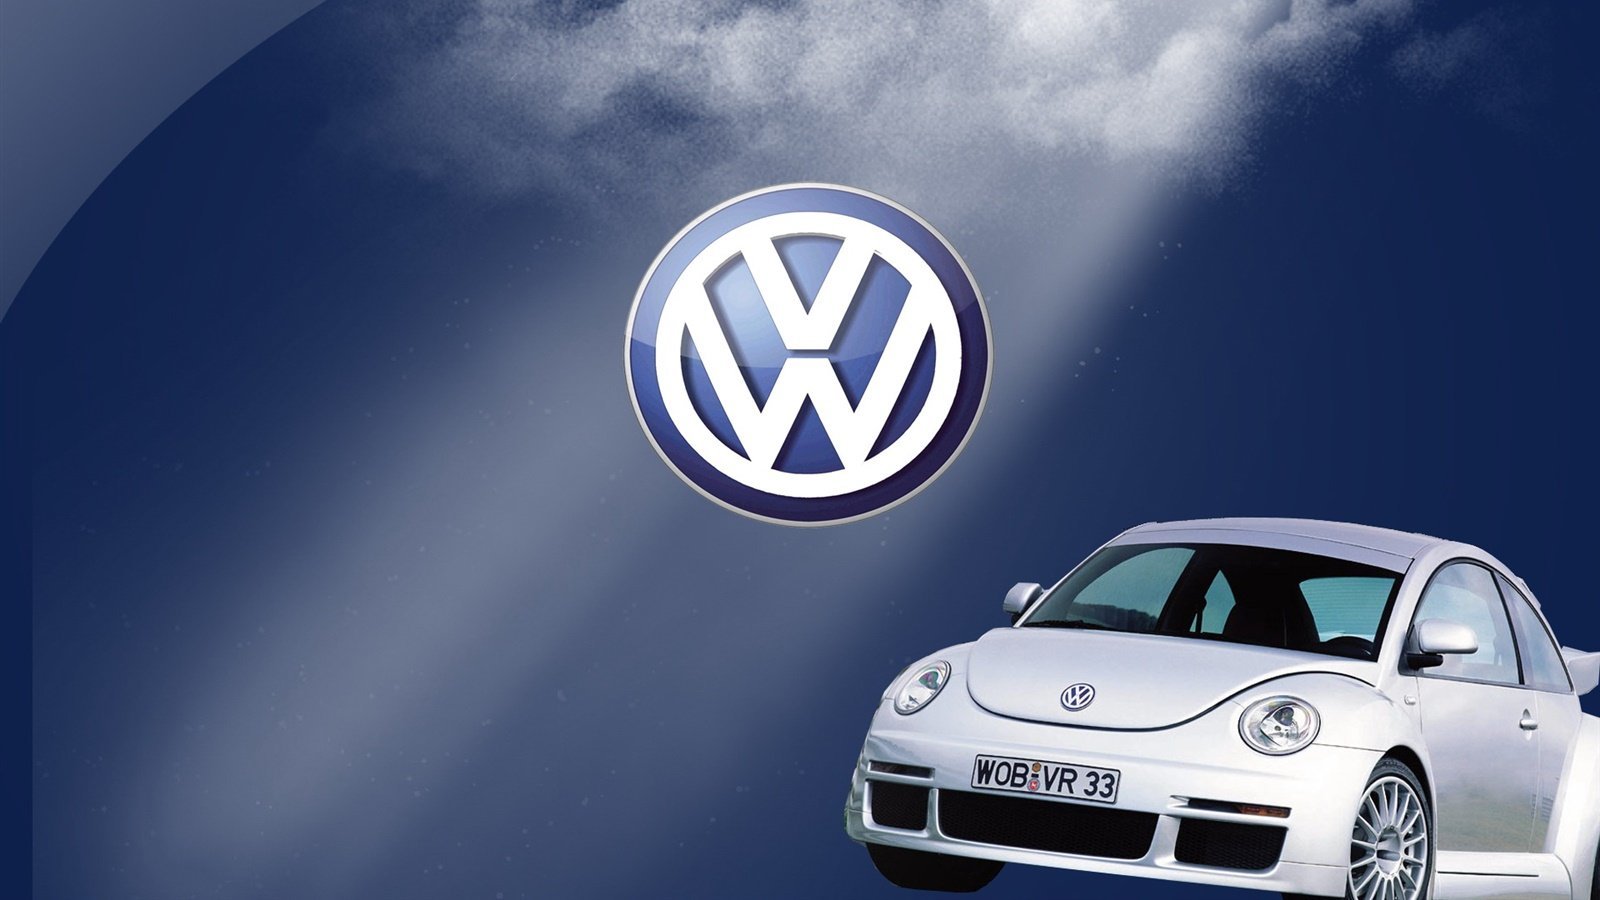 Volkswagen главная. Машина Фольксваген. Логотип Фольксваген. Обои VW. Заставка Фольксваген.